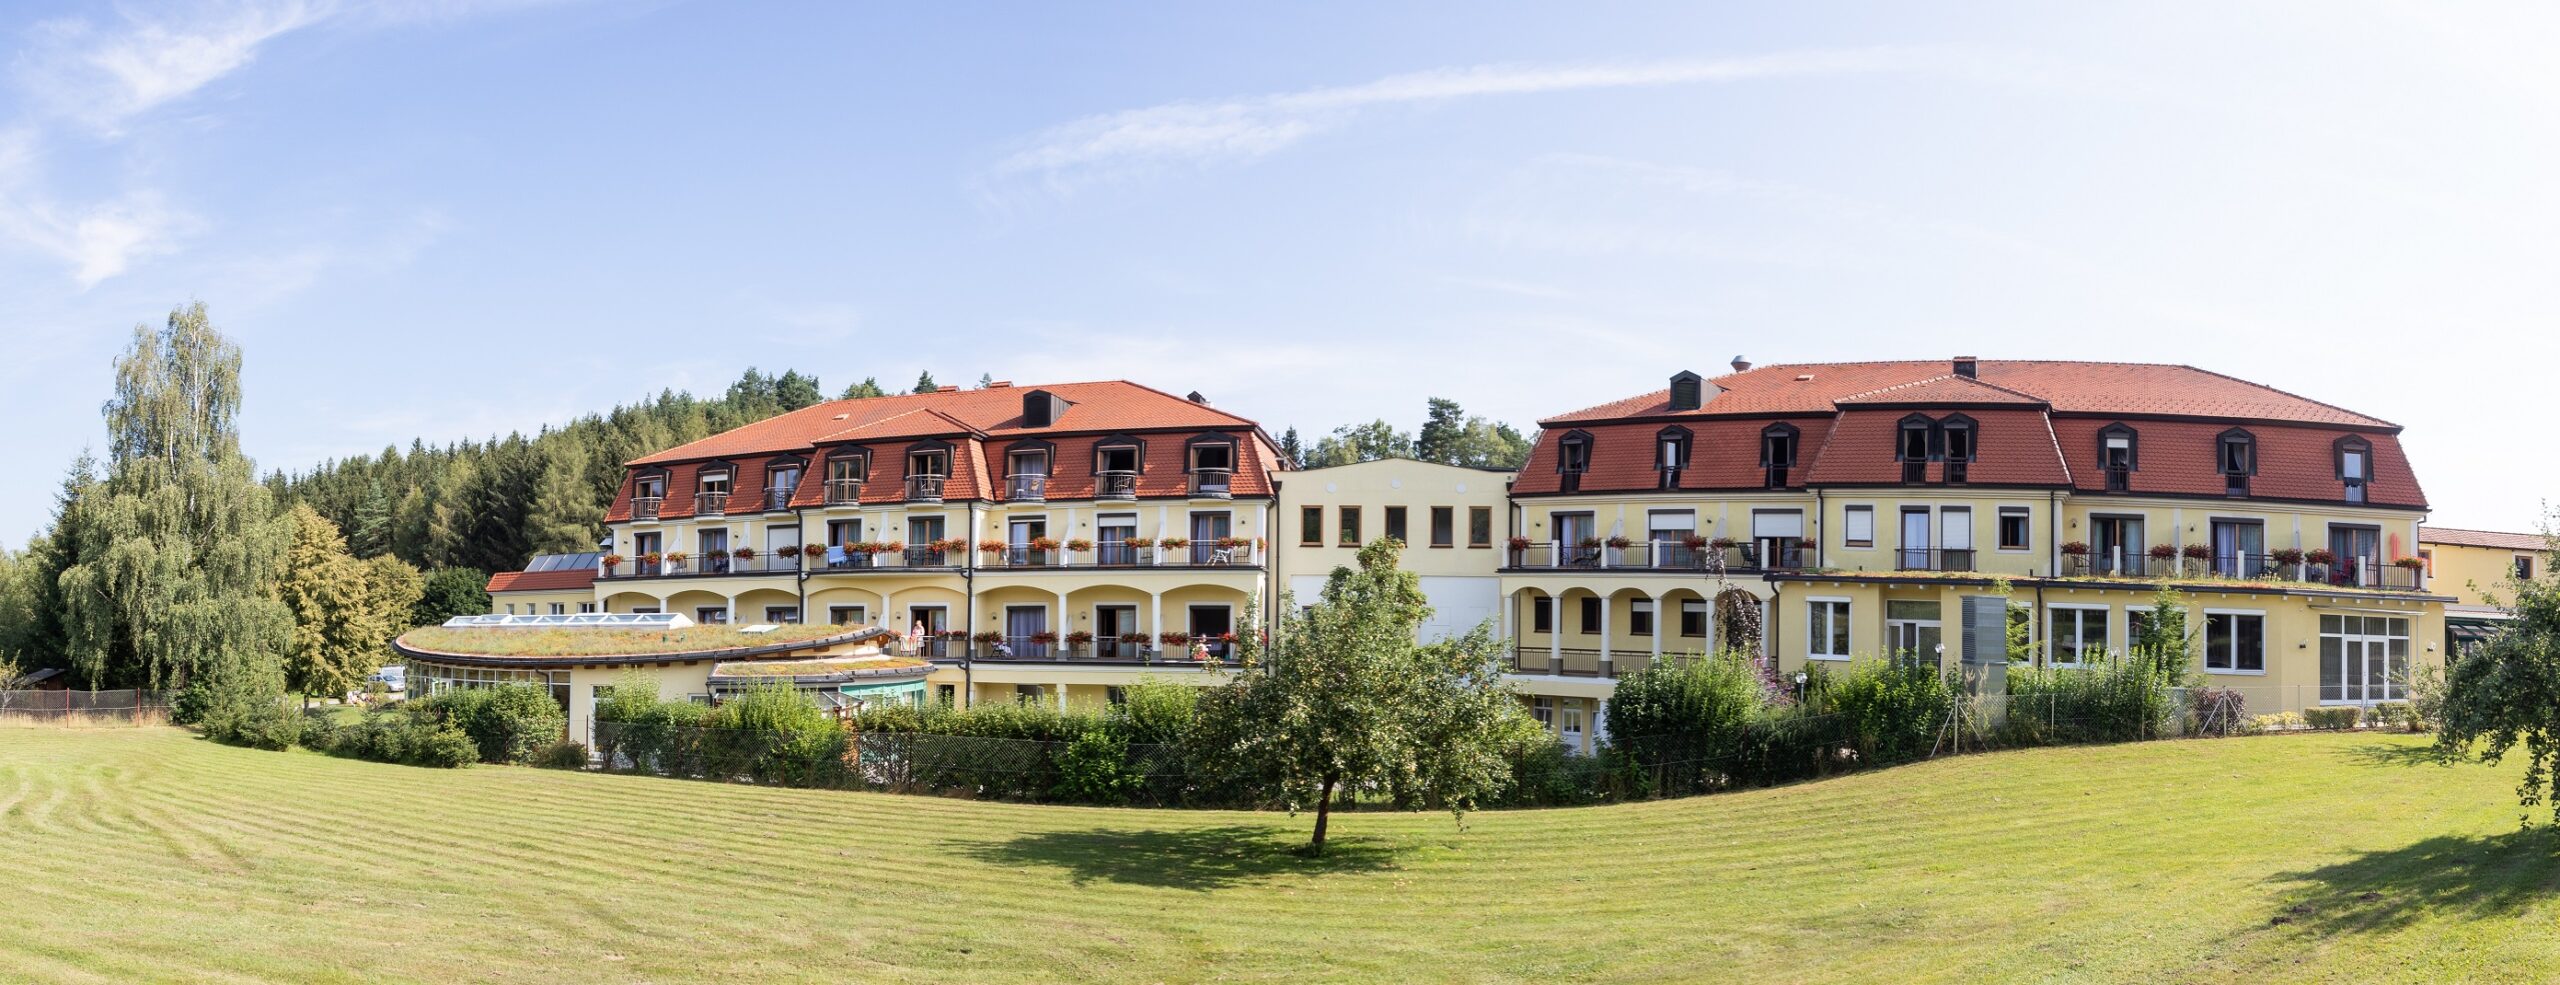 Gesundheitshotel Moorbad Bad Großpertholz